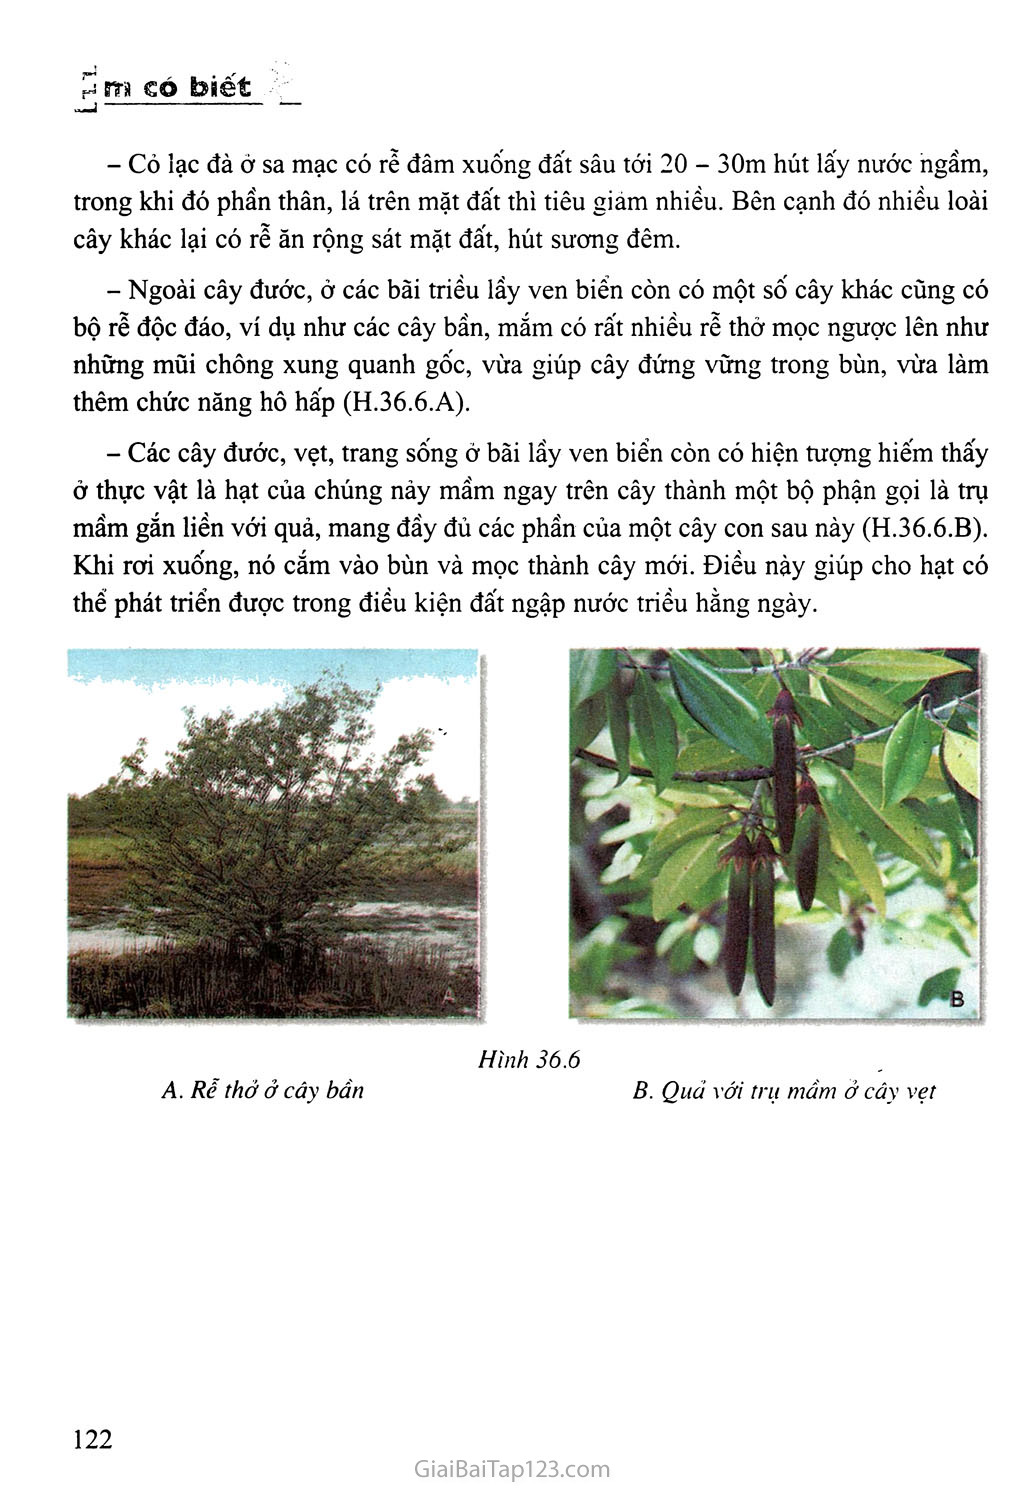 Bài 36: Tổng kết về cây có hoa trang 7